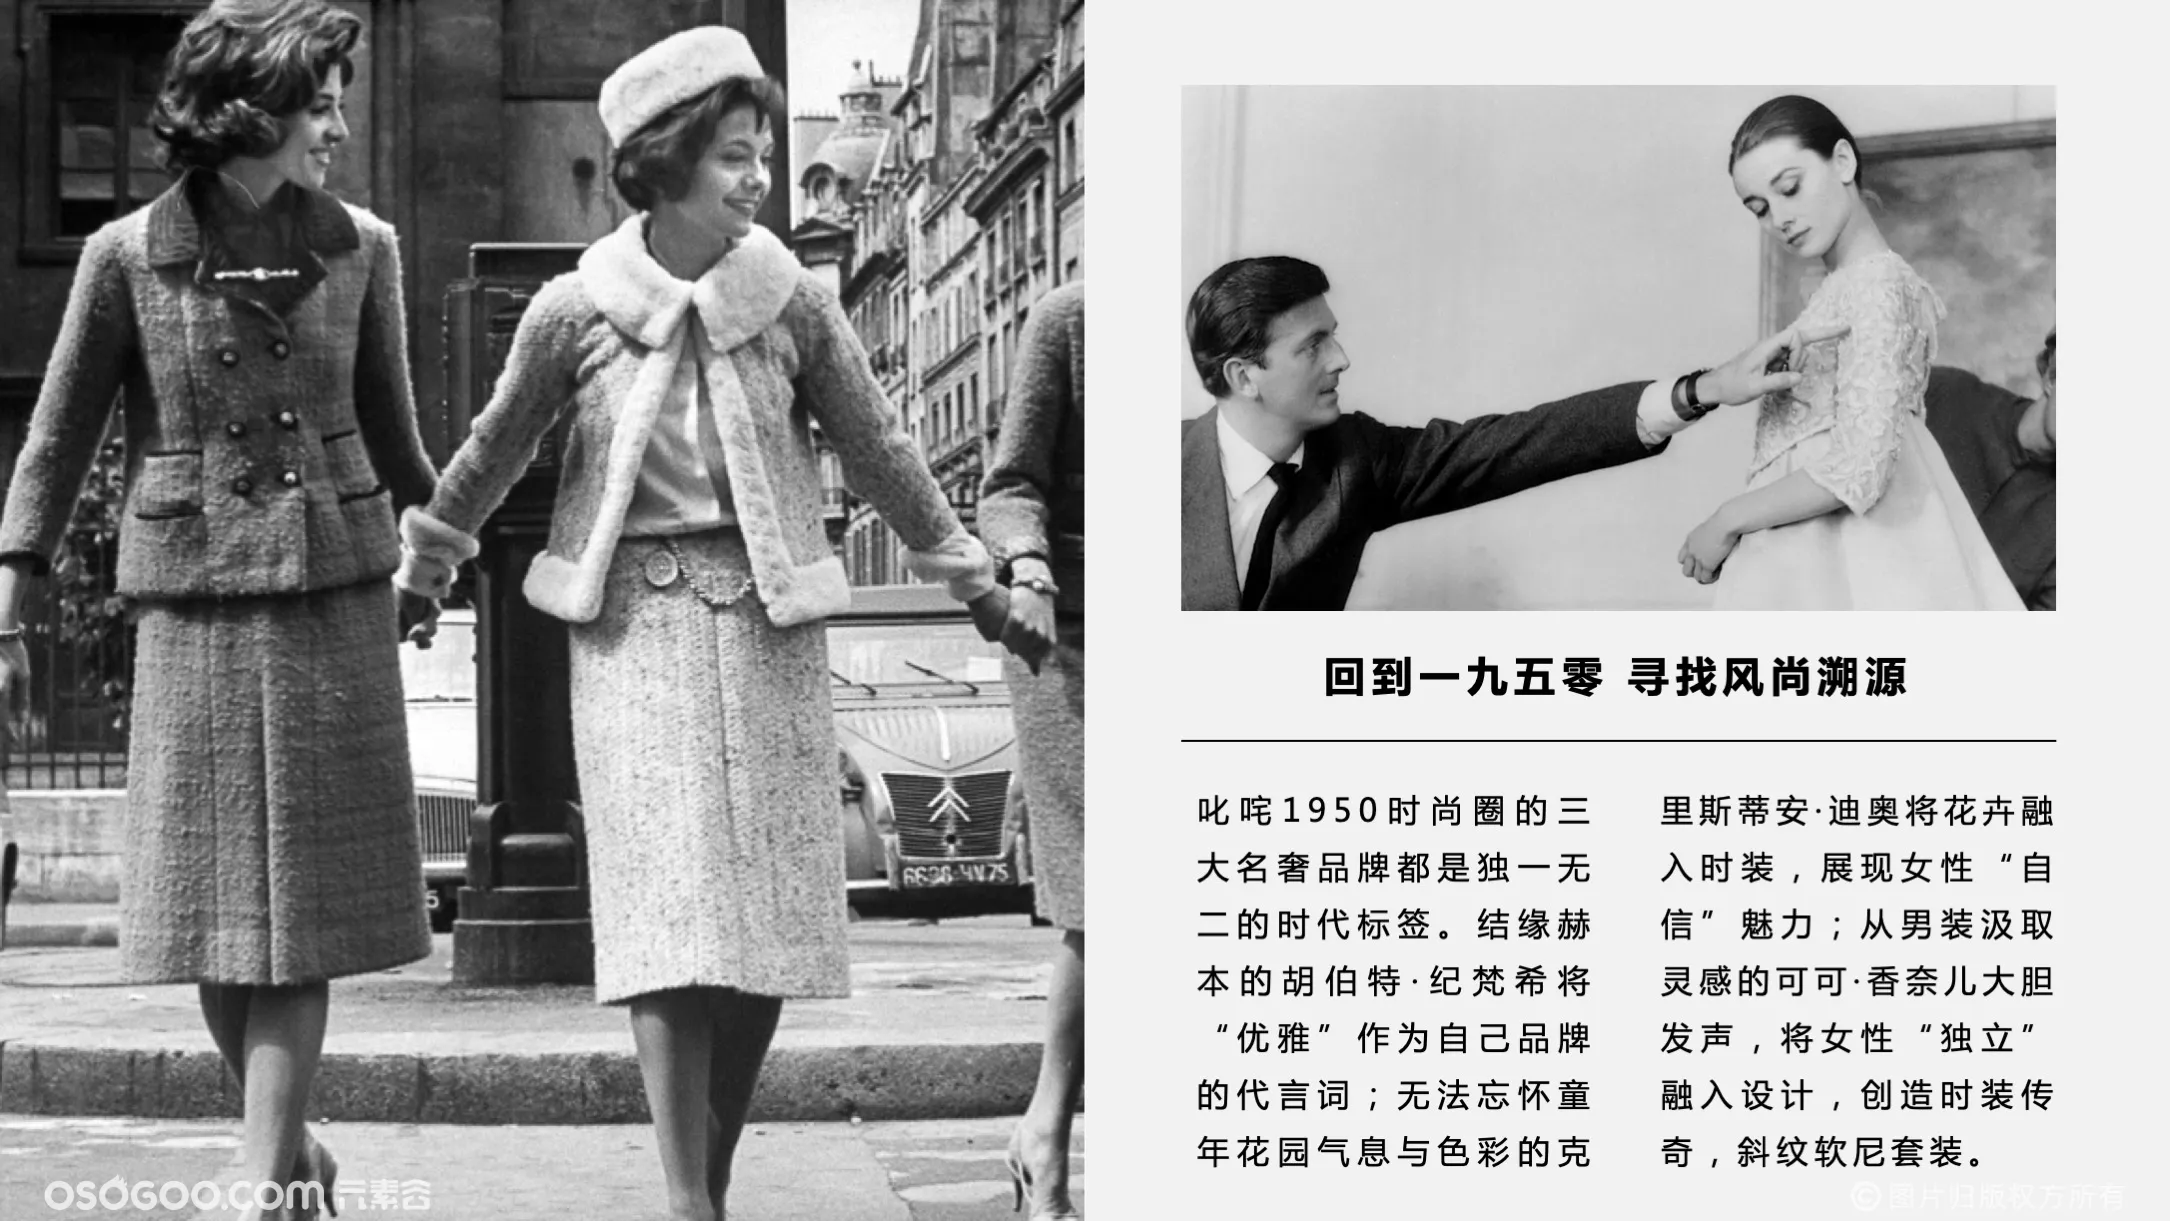 【潮启1950】三大名奢品牌时尚艺术收藏展 —感映艺术出品